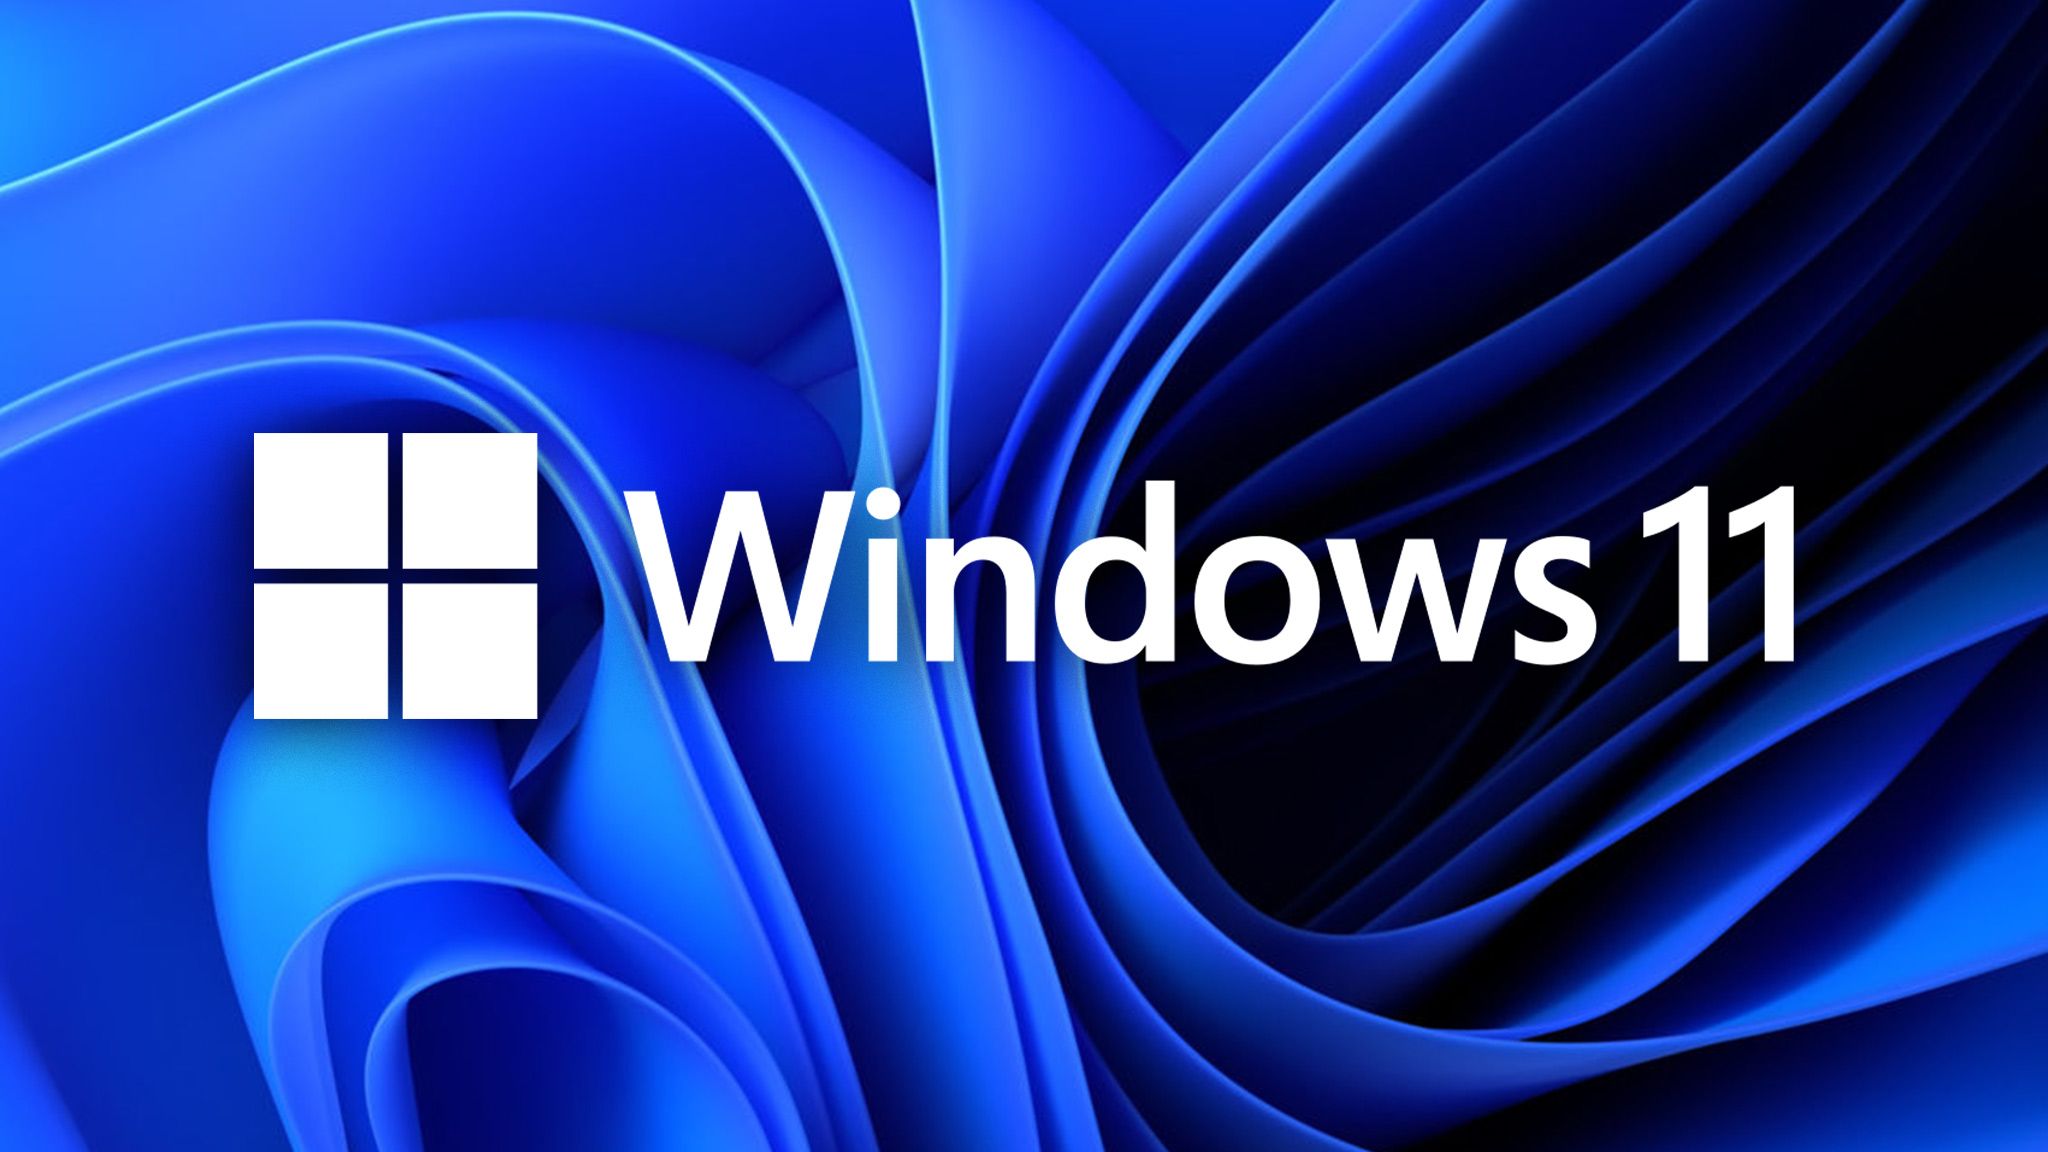  Windows Hintergrundbild 2048x1152. Microsoft arbeitet an Editor für animierte Hintergründe